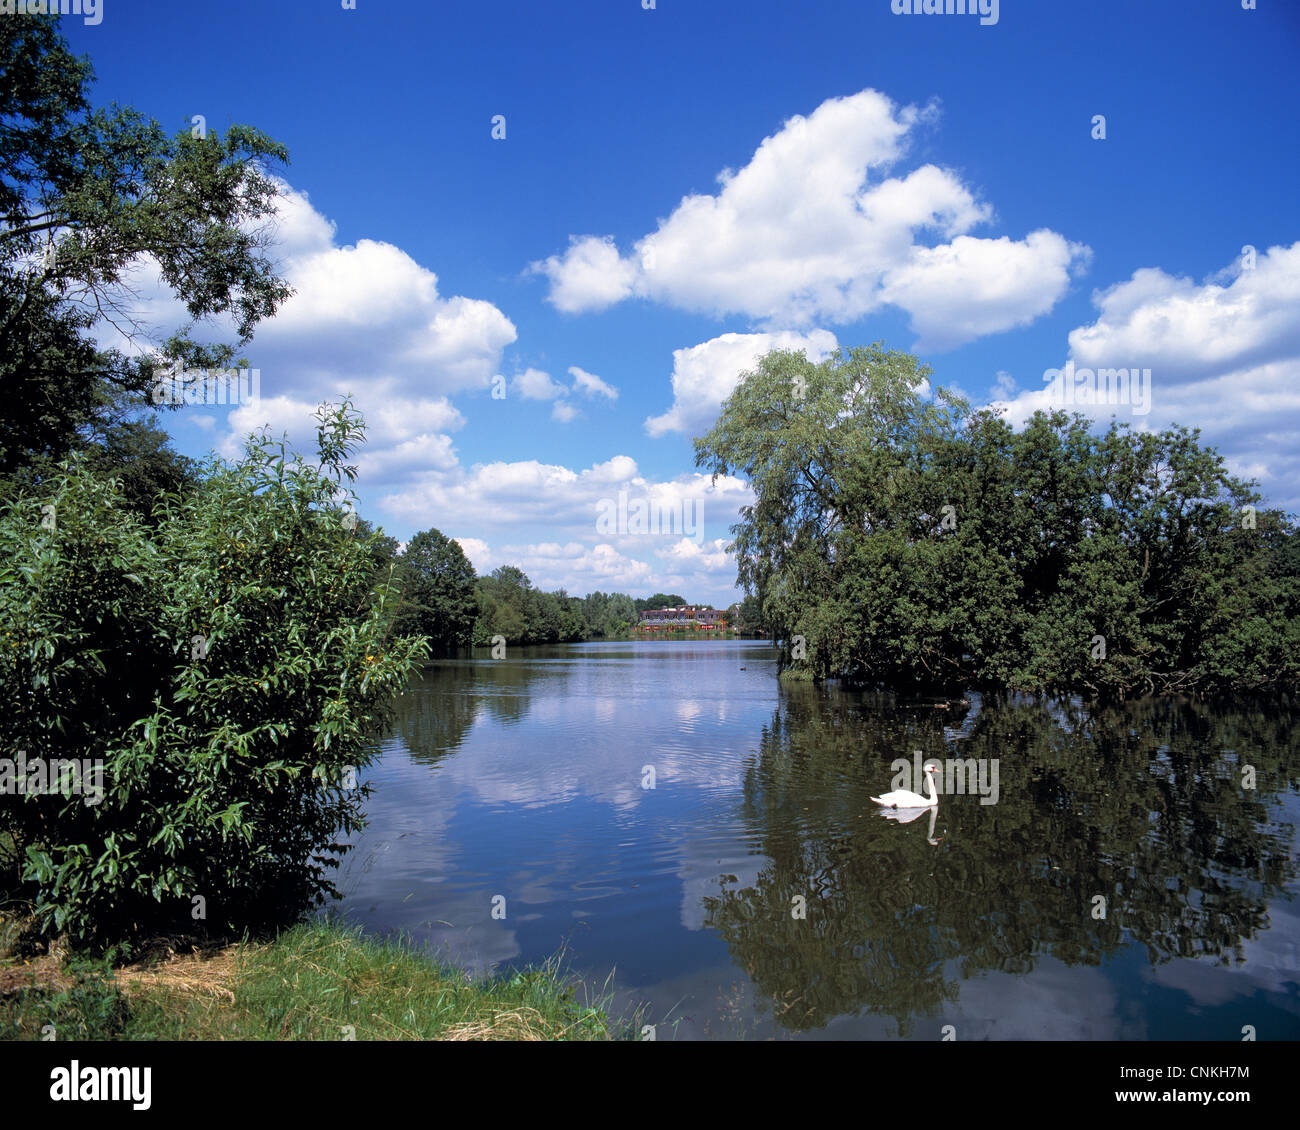 Kumuluswolken ueber dem Isenhagener See in Hankensbuettel, Lueneburger Heide, Niedersachsen, ein weisser Schwan schwimmt auf dem See Stock Photo